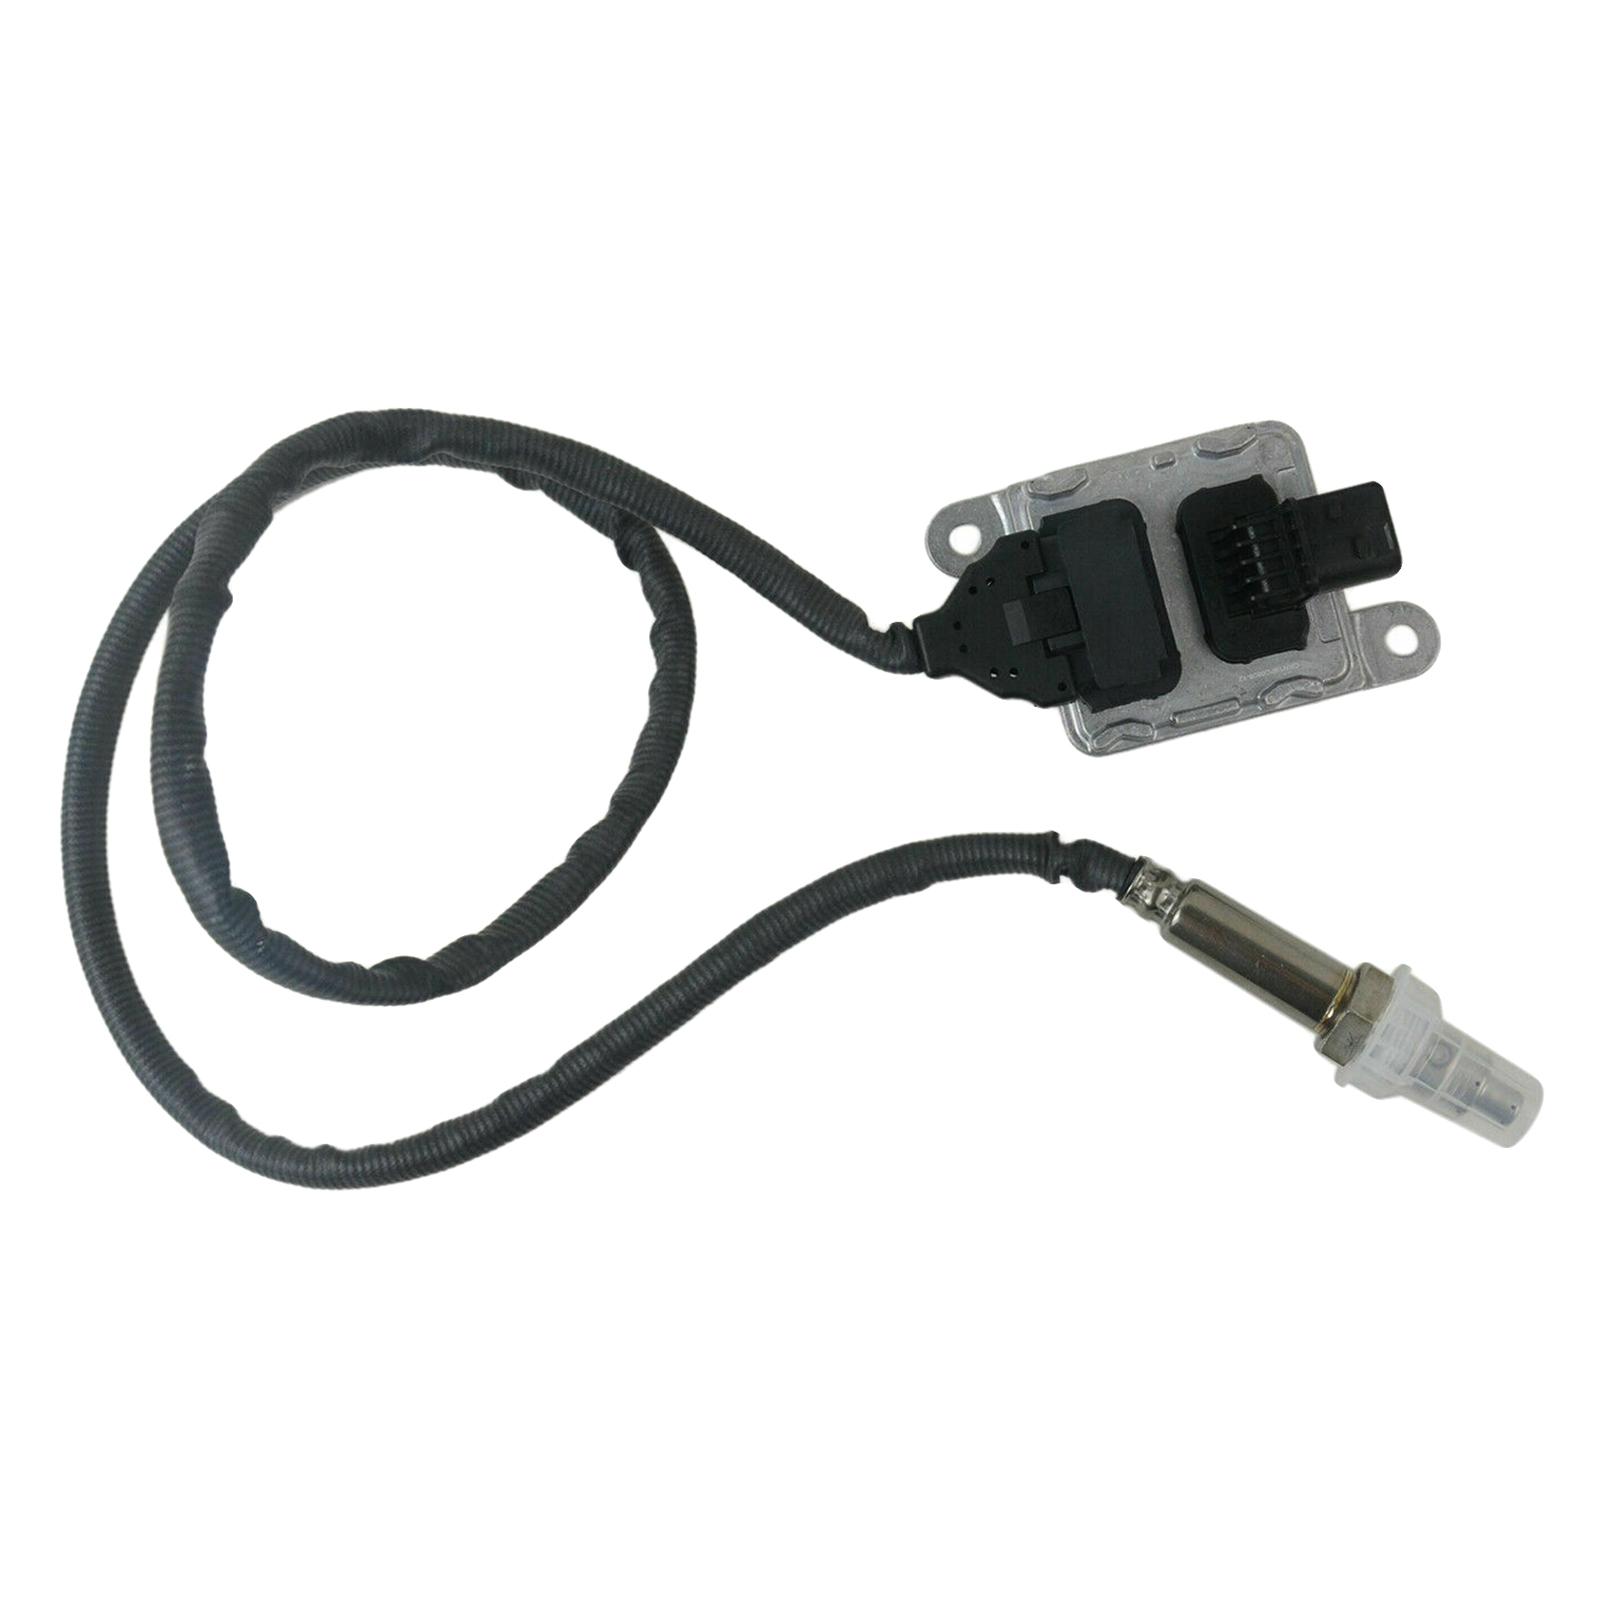 12V Nox Sensor Probe 5WK96741 4326874 Square Plug for Spartan Motors